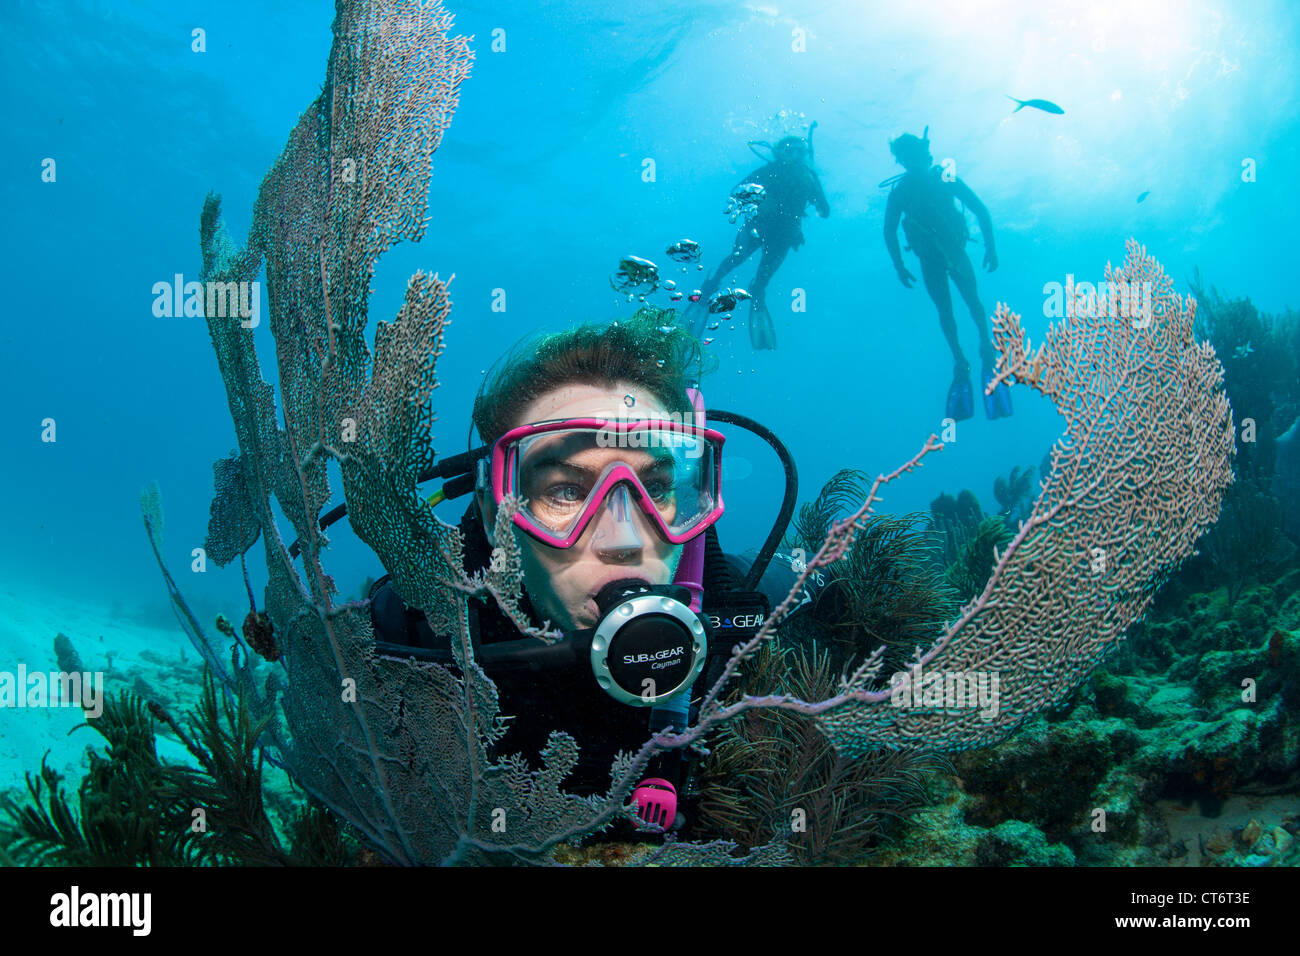 Scuba diver and sea fan Stock Photo